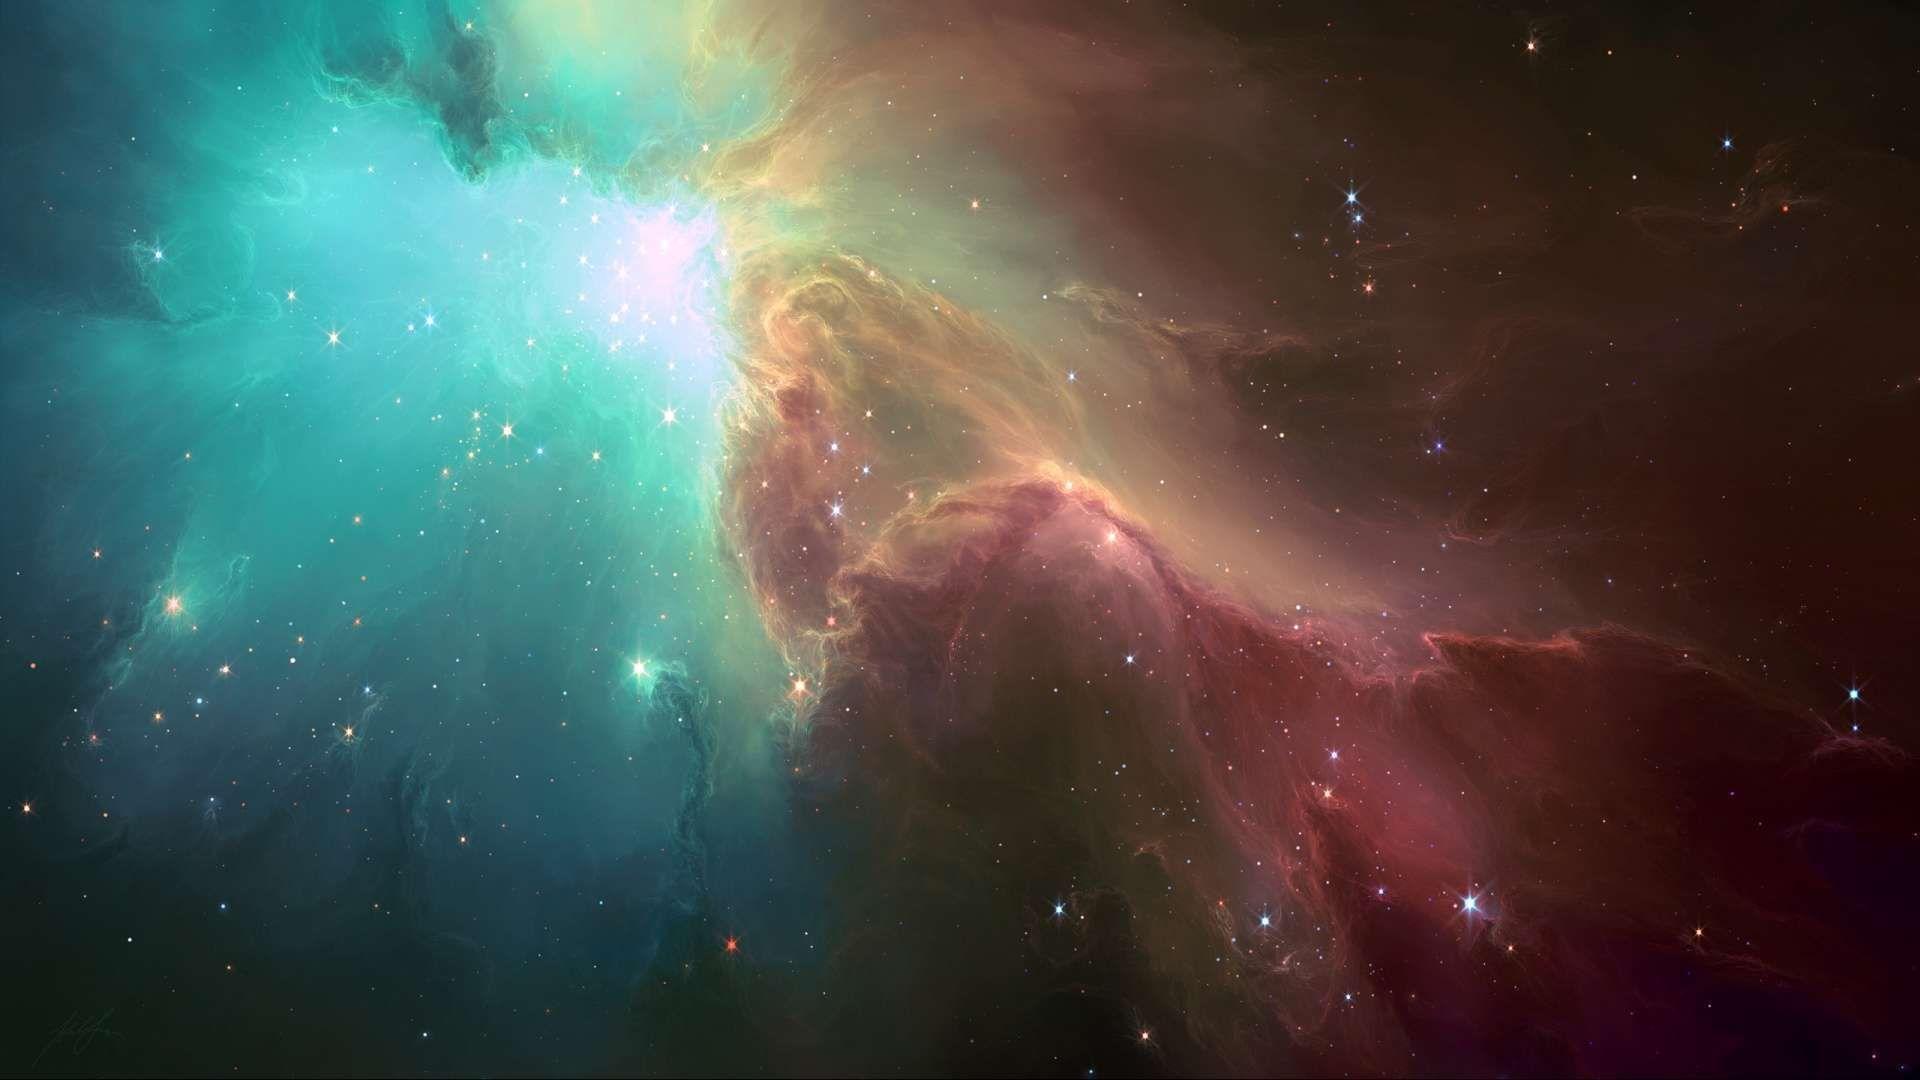 Dark Nebula wallpaper. PostersandPics.com. Nebula